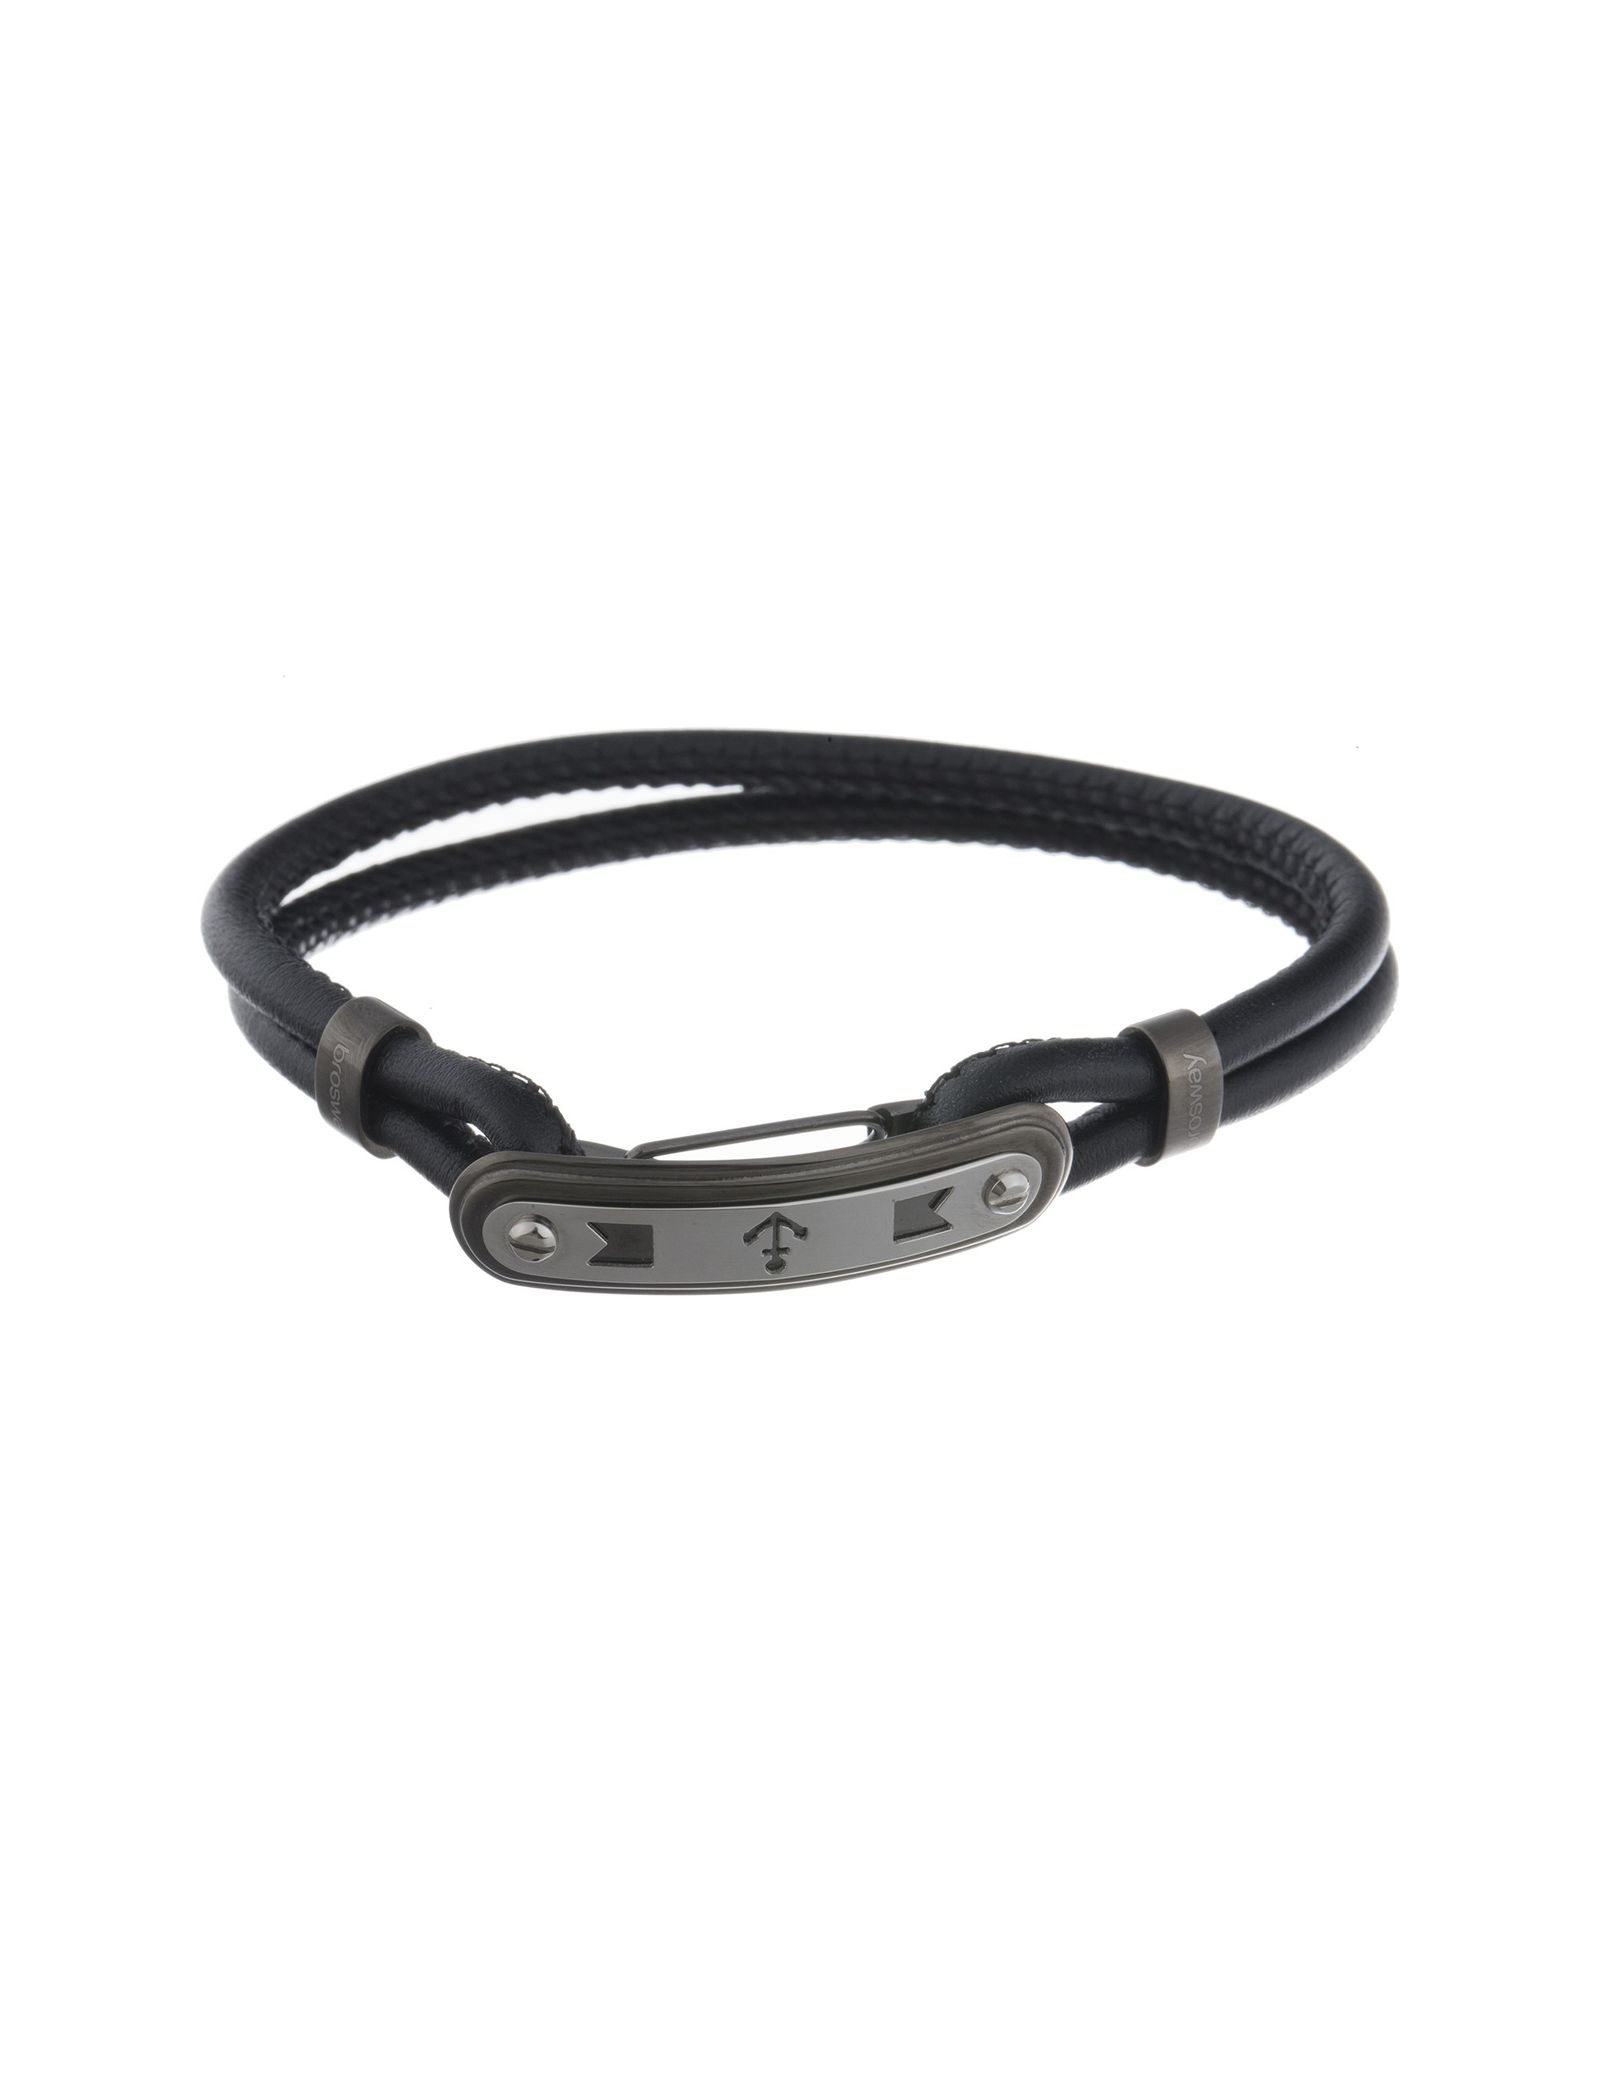 دستبند چرمی مردانه - برازوی - Black - 1